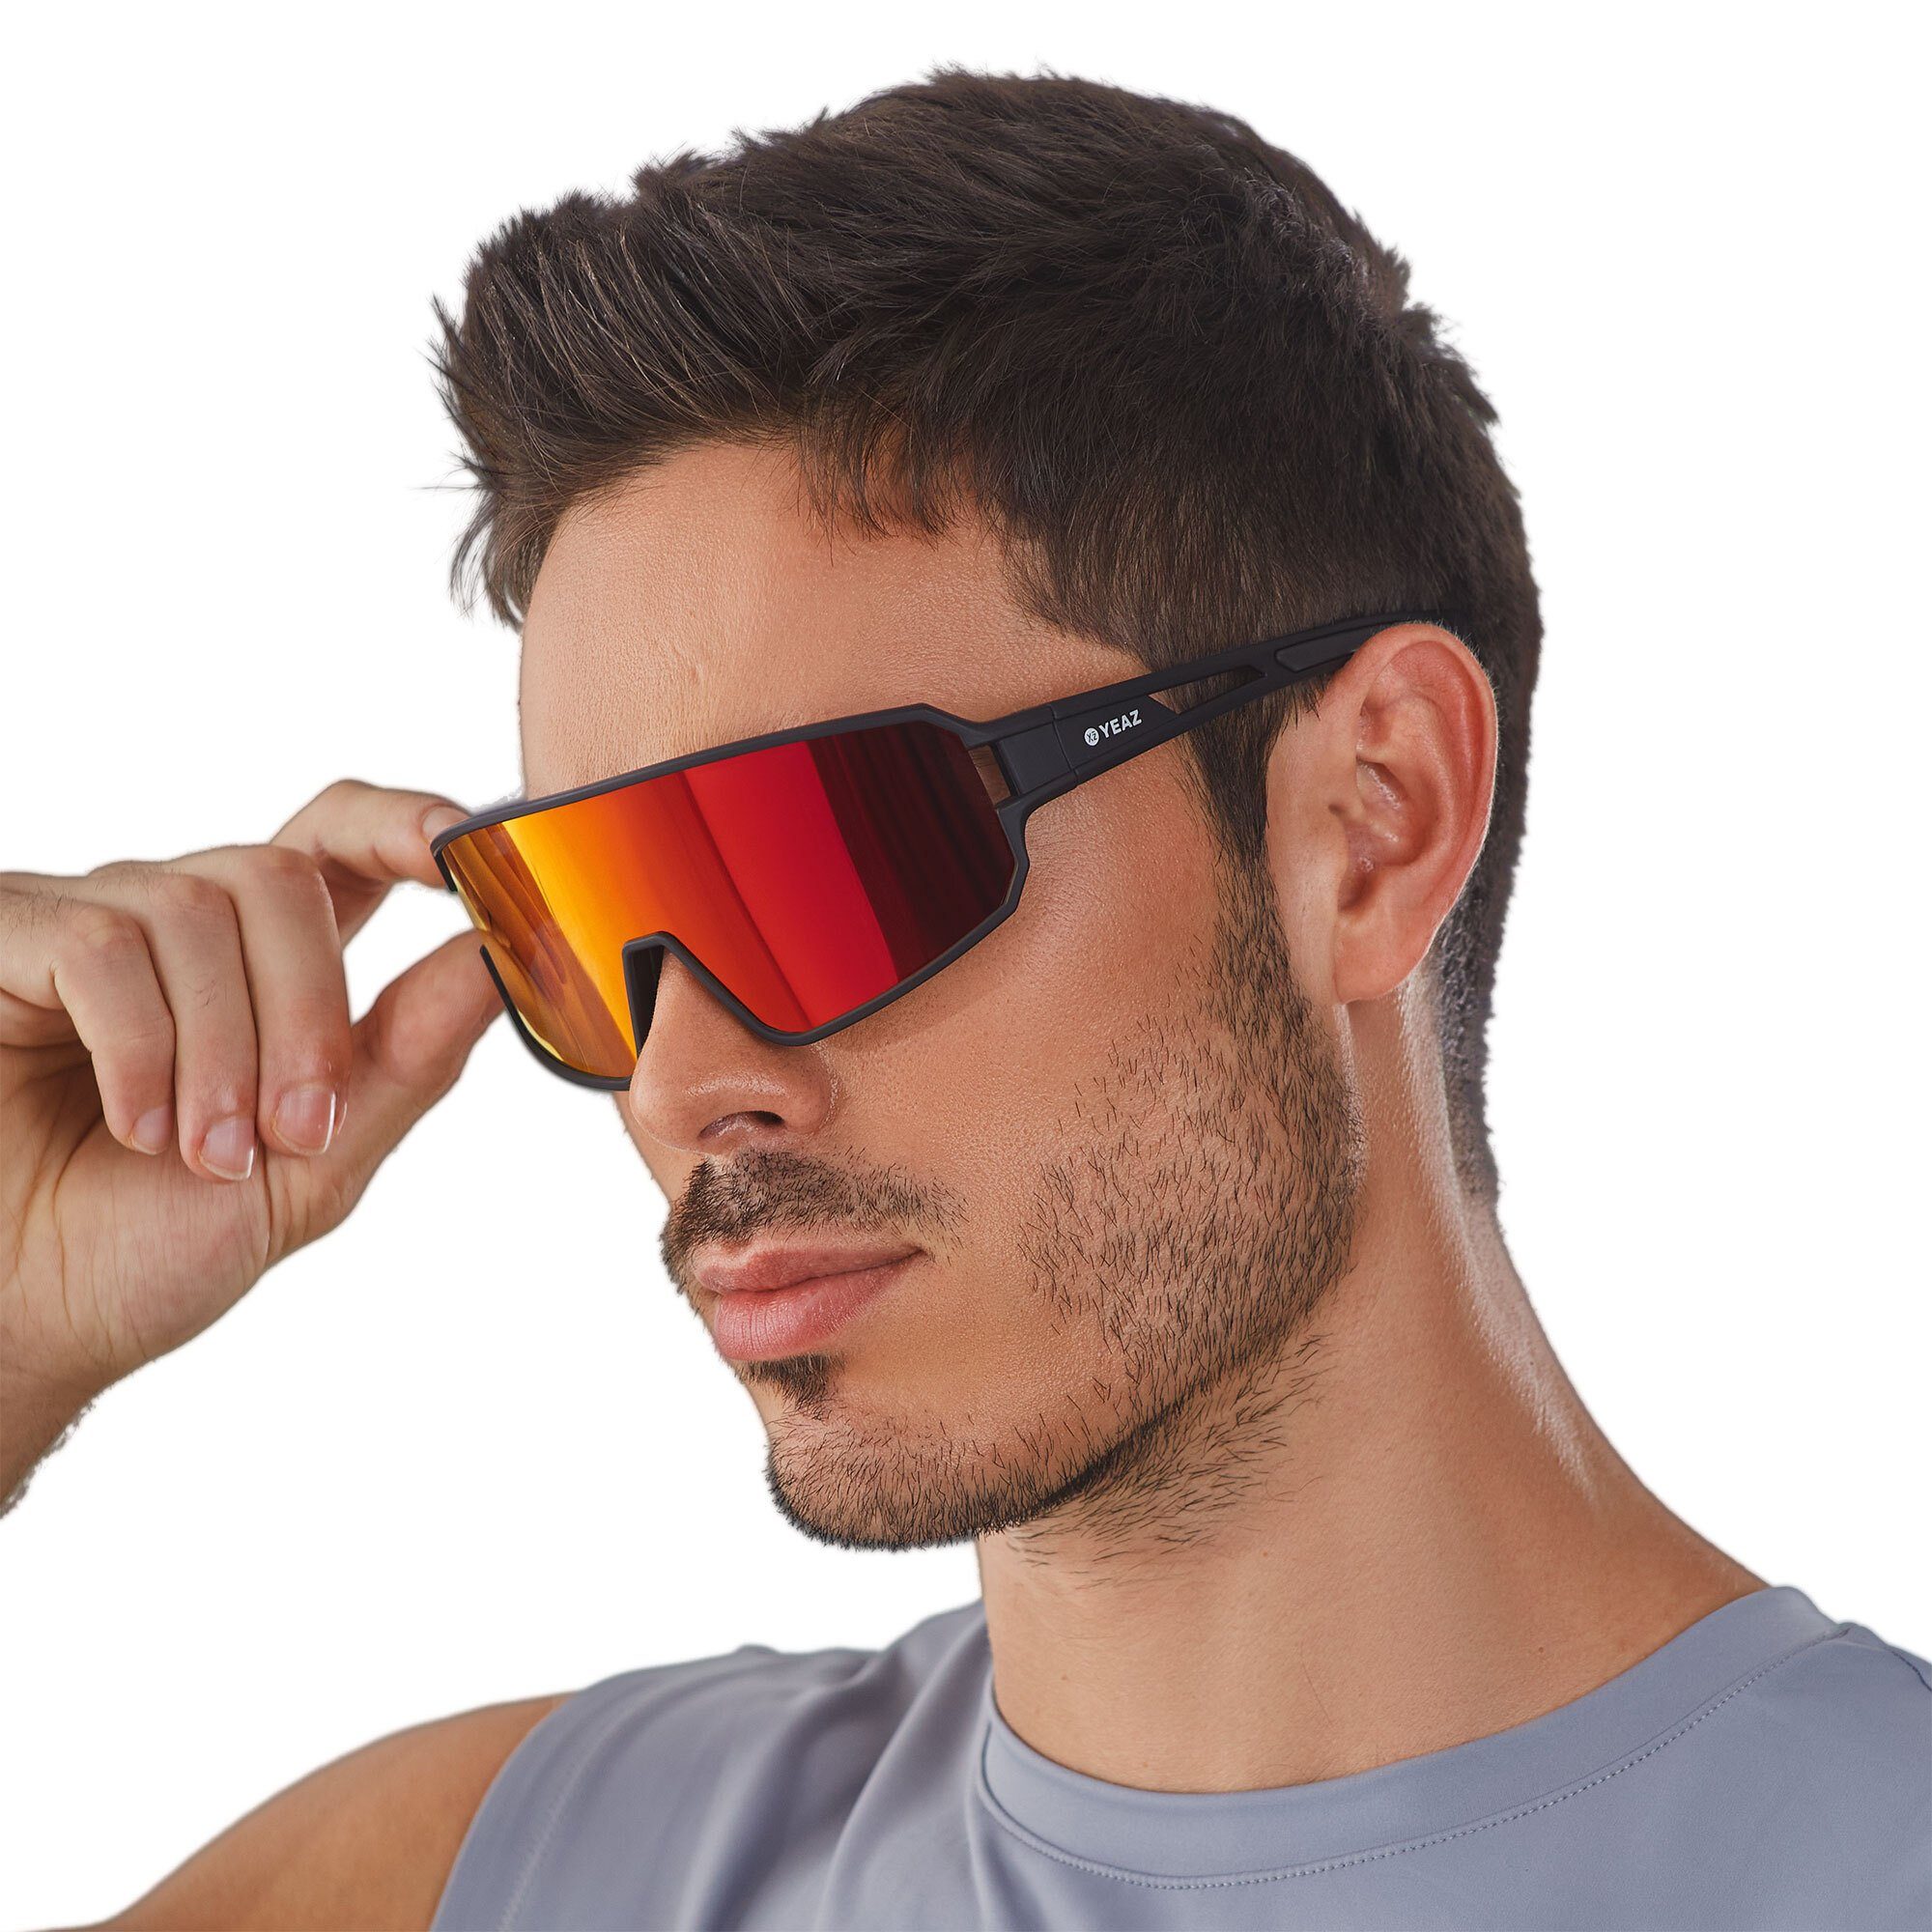 YEAZ Sportbrille SUNWAVE sport-sonnenbrille black/red, Guter Schutz bei optimierter Sicht